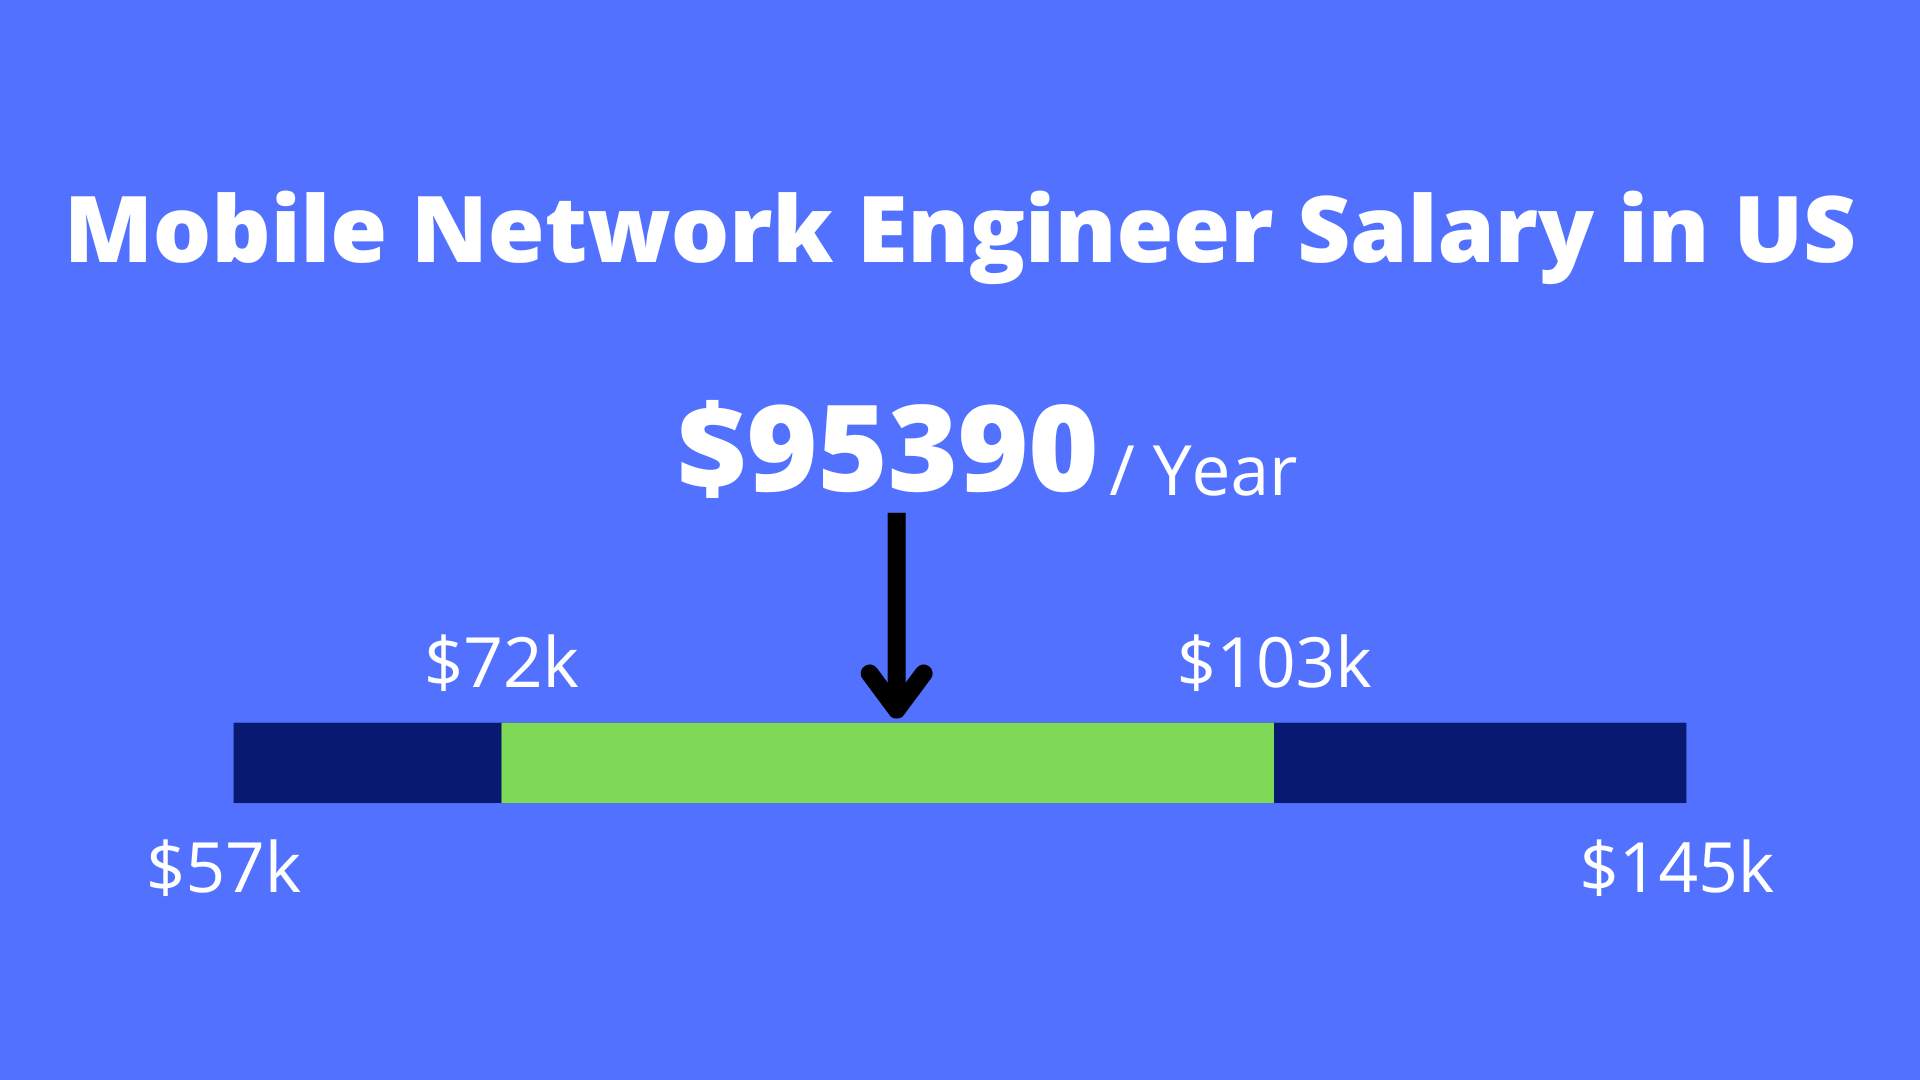 Salario de Mobile Network Engineer